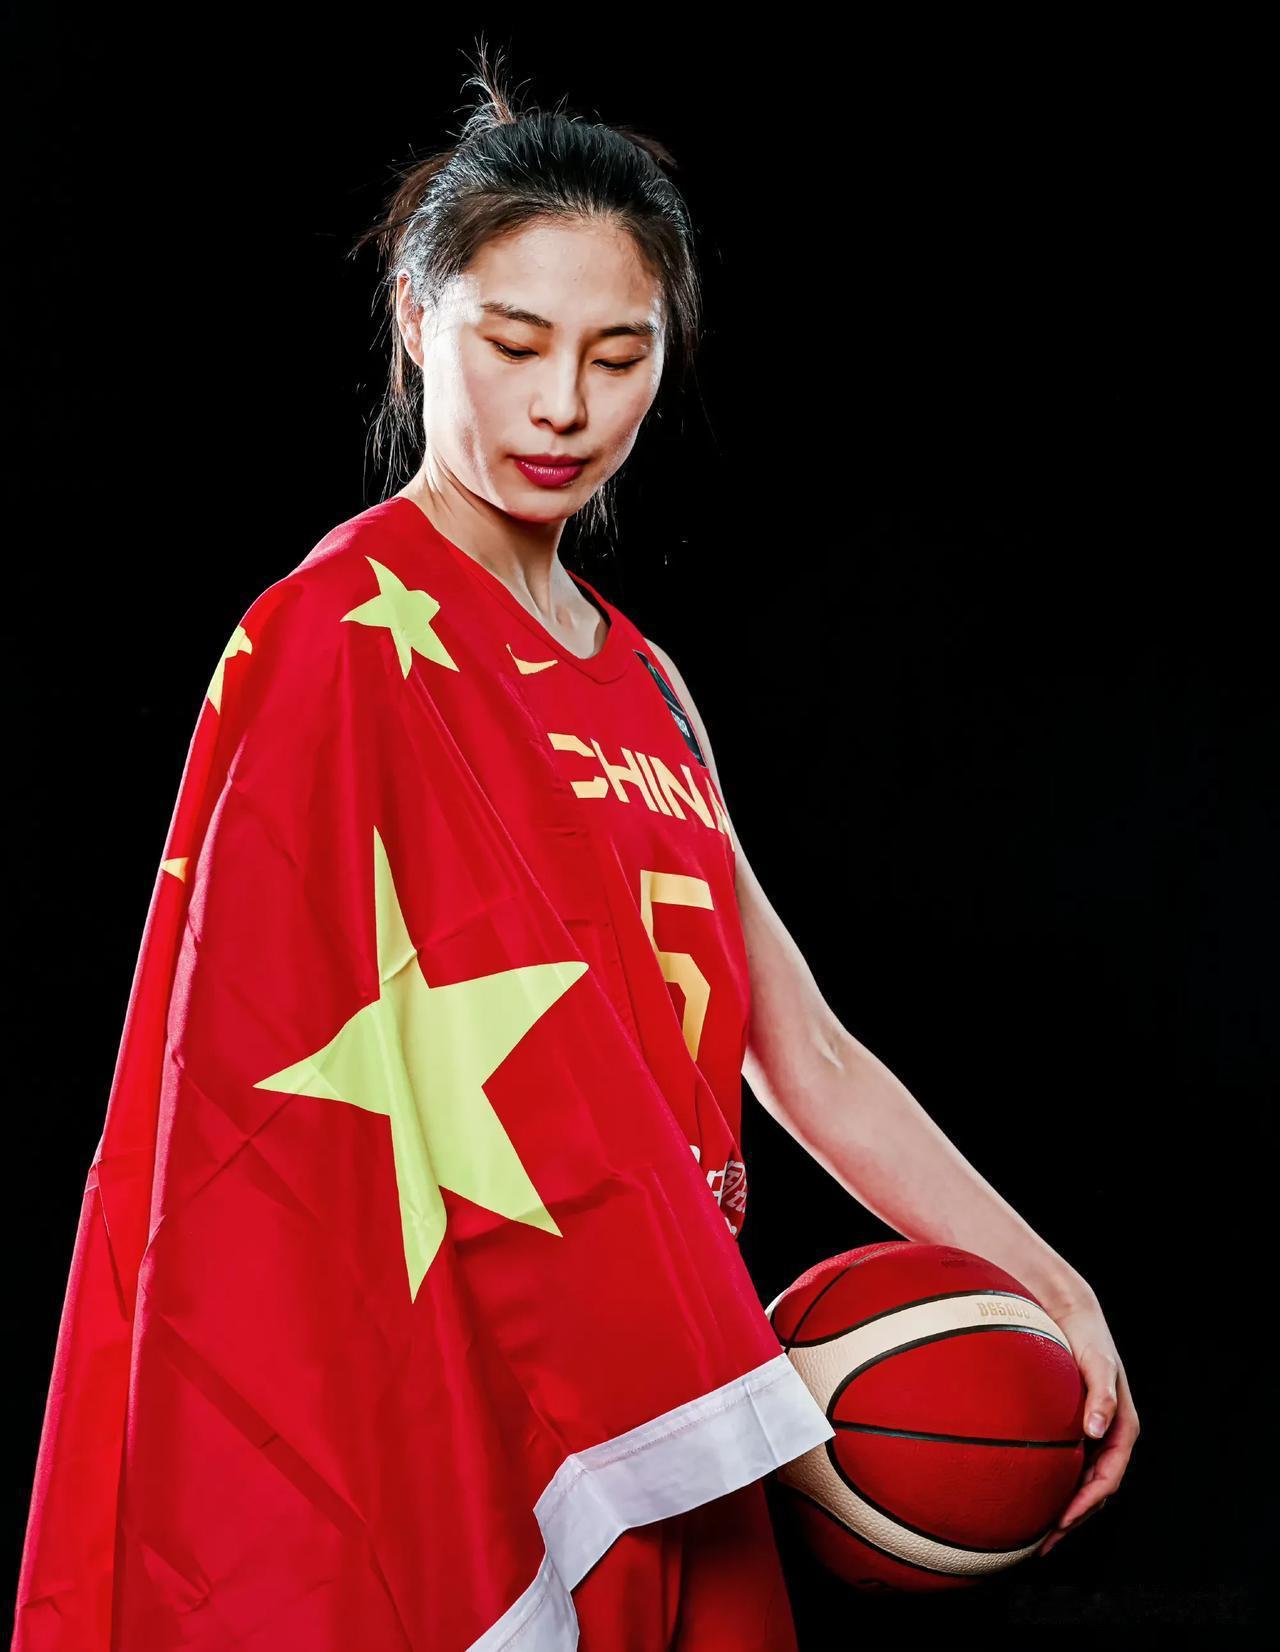 中国女篮
女篮亚洲杯倒计时1天，我心目中的预测首发阵容。
1、王思雨
2、杨力维